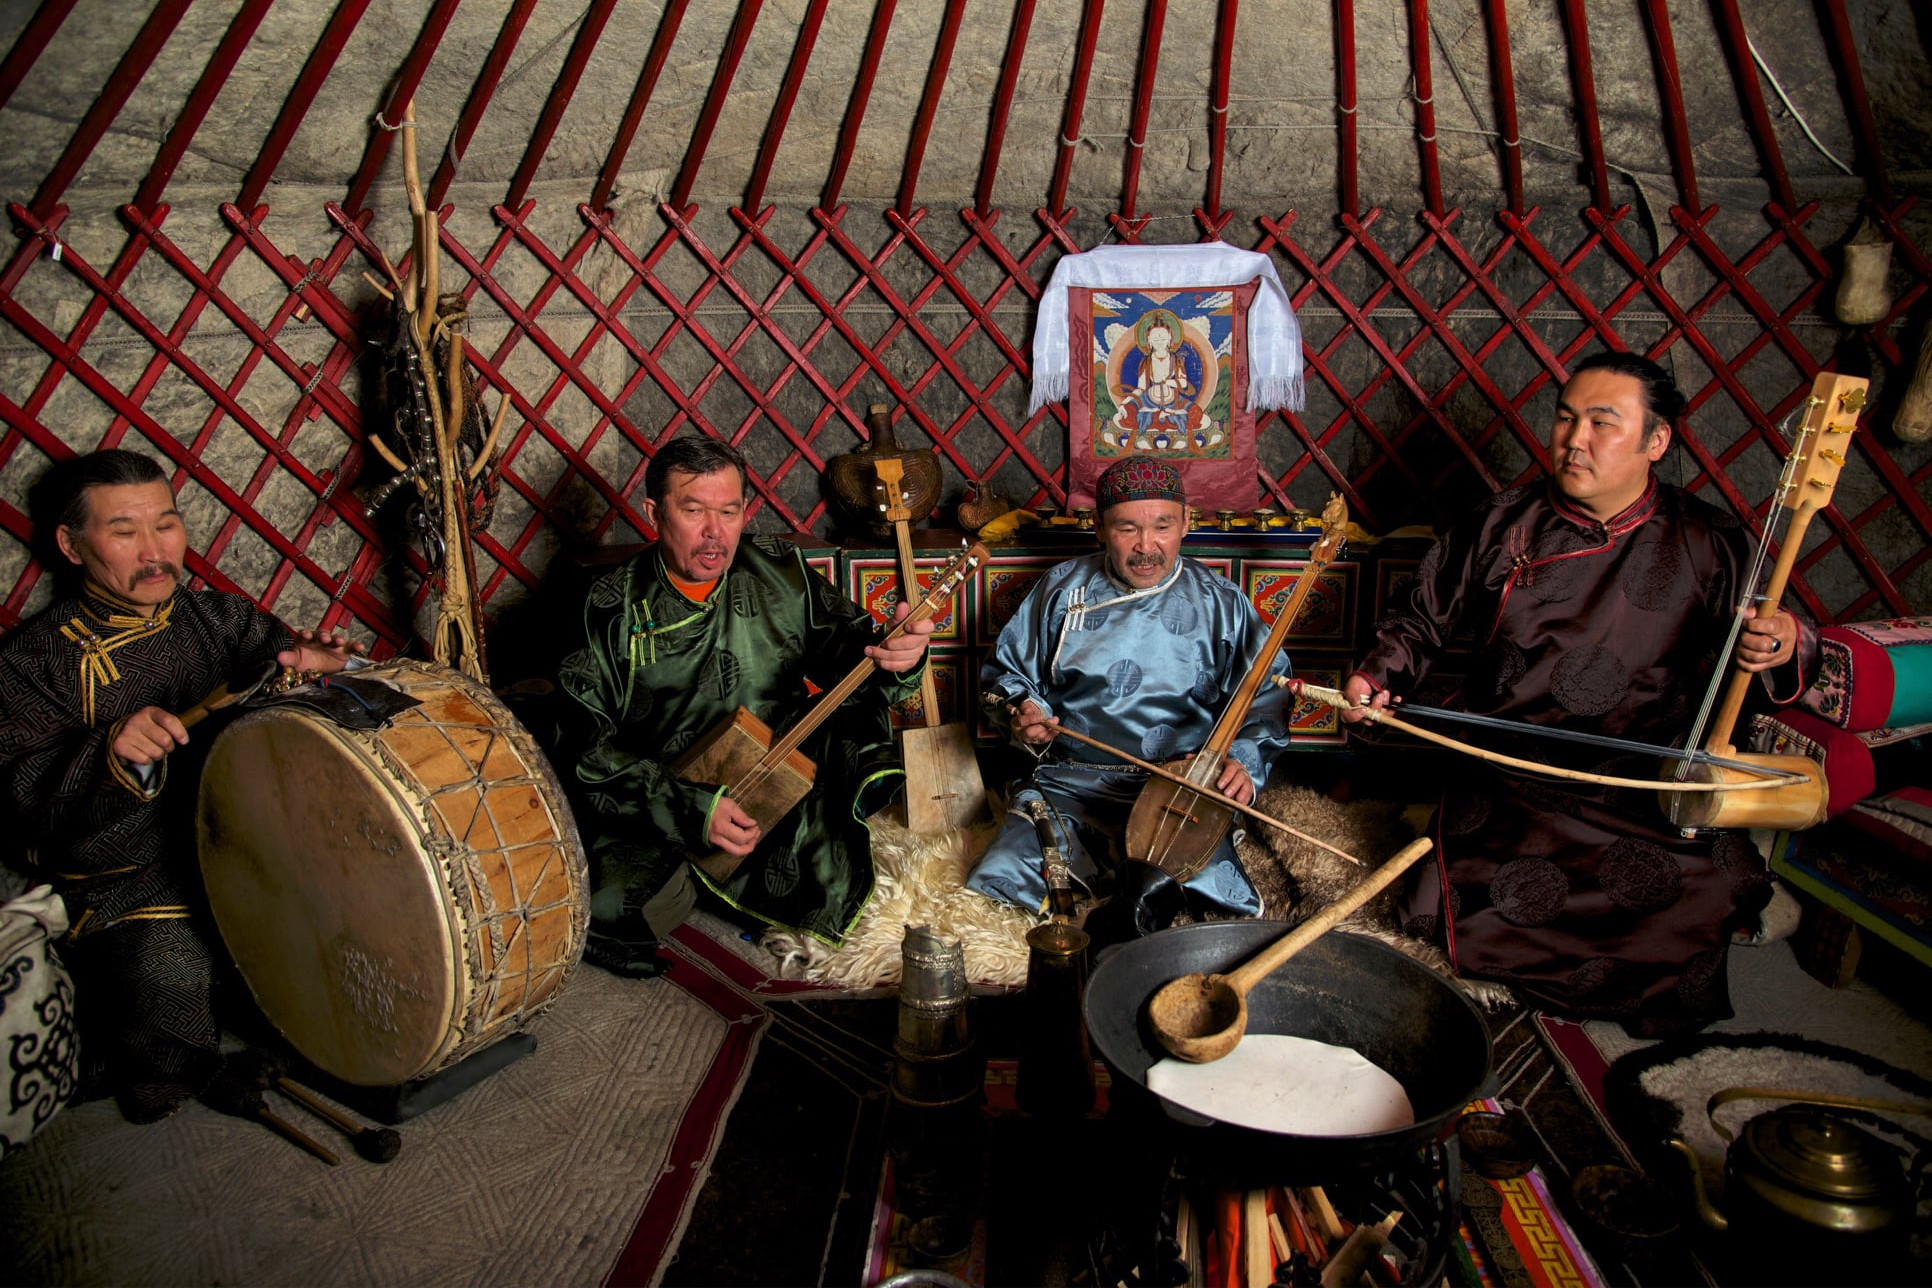 A Mongóliával szomszédos Tuvai Köztársaságban élő Huun Huur Tu együttes is a Muzsikás fesztivál vendége lesz pénteken a Fonóban